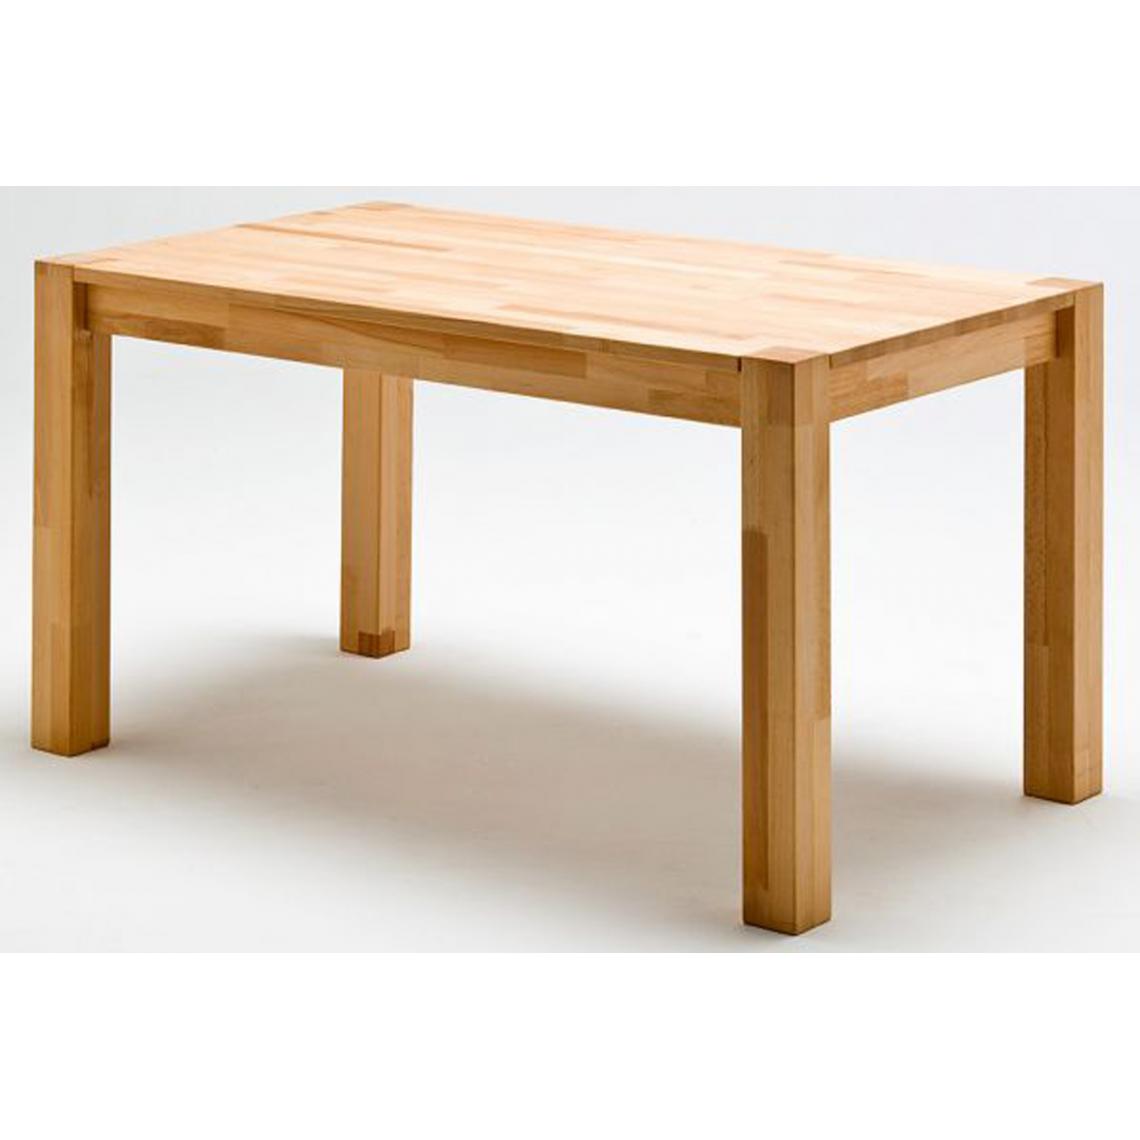 Pegane - Table de salle à manger en chêne sauvage massif huilé - L.140 x H.77 x P.80 cm - Tables à manger